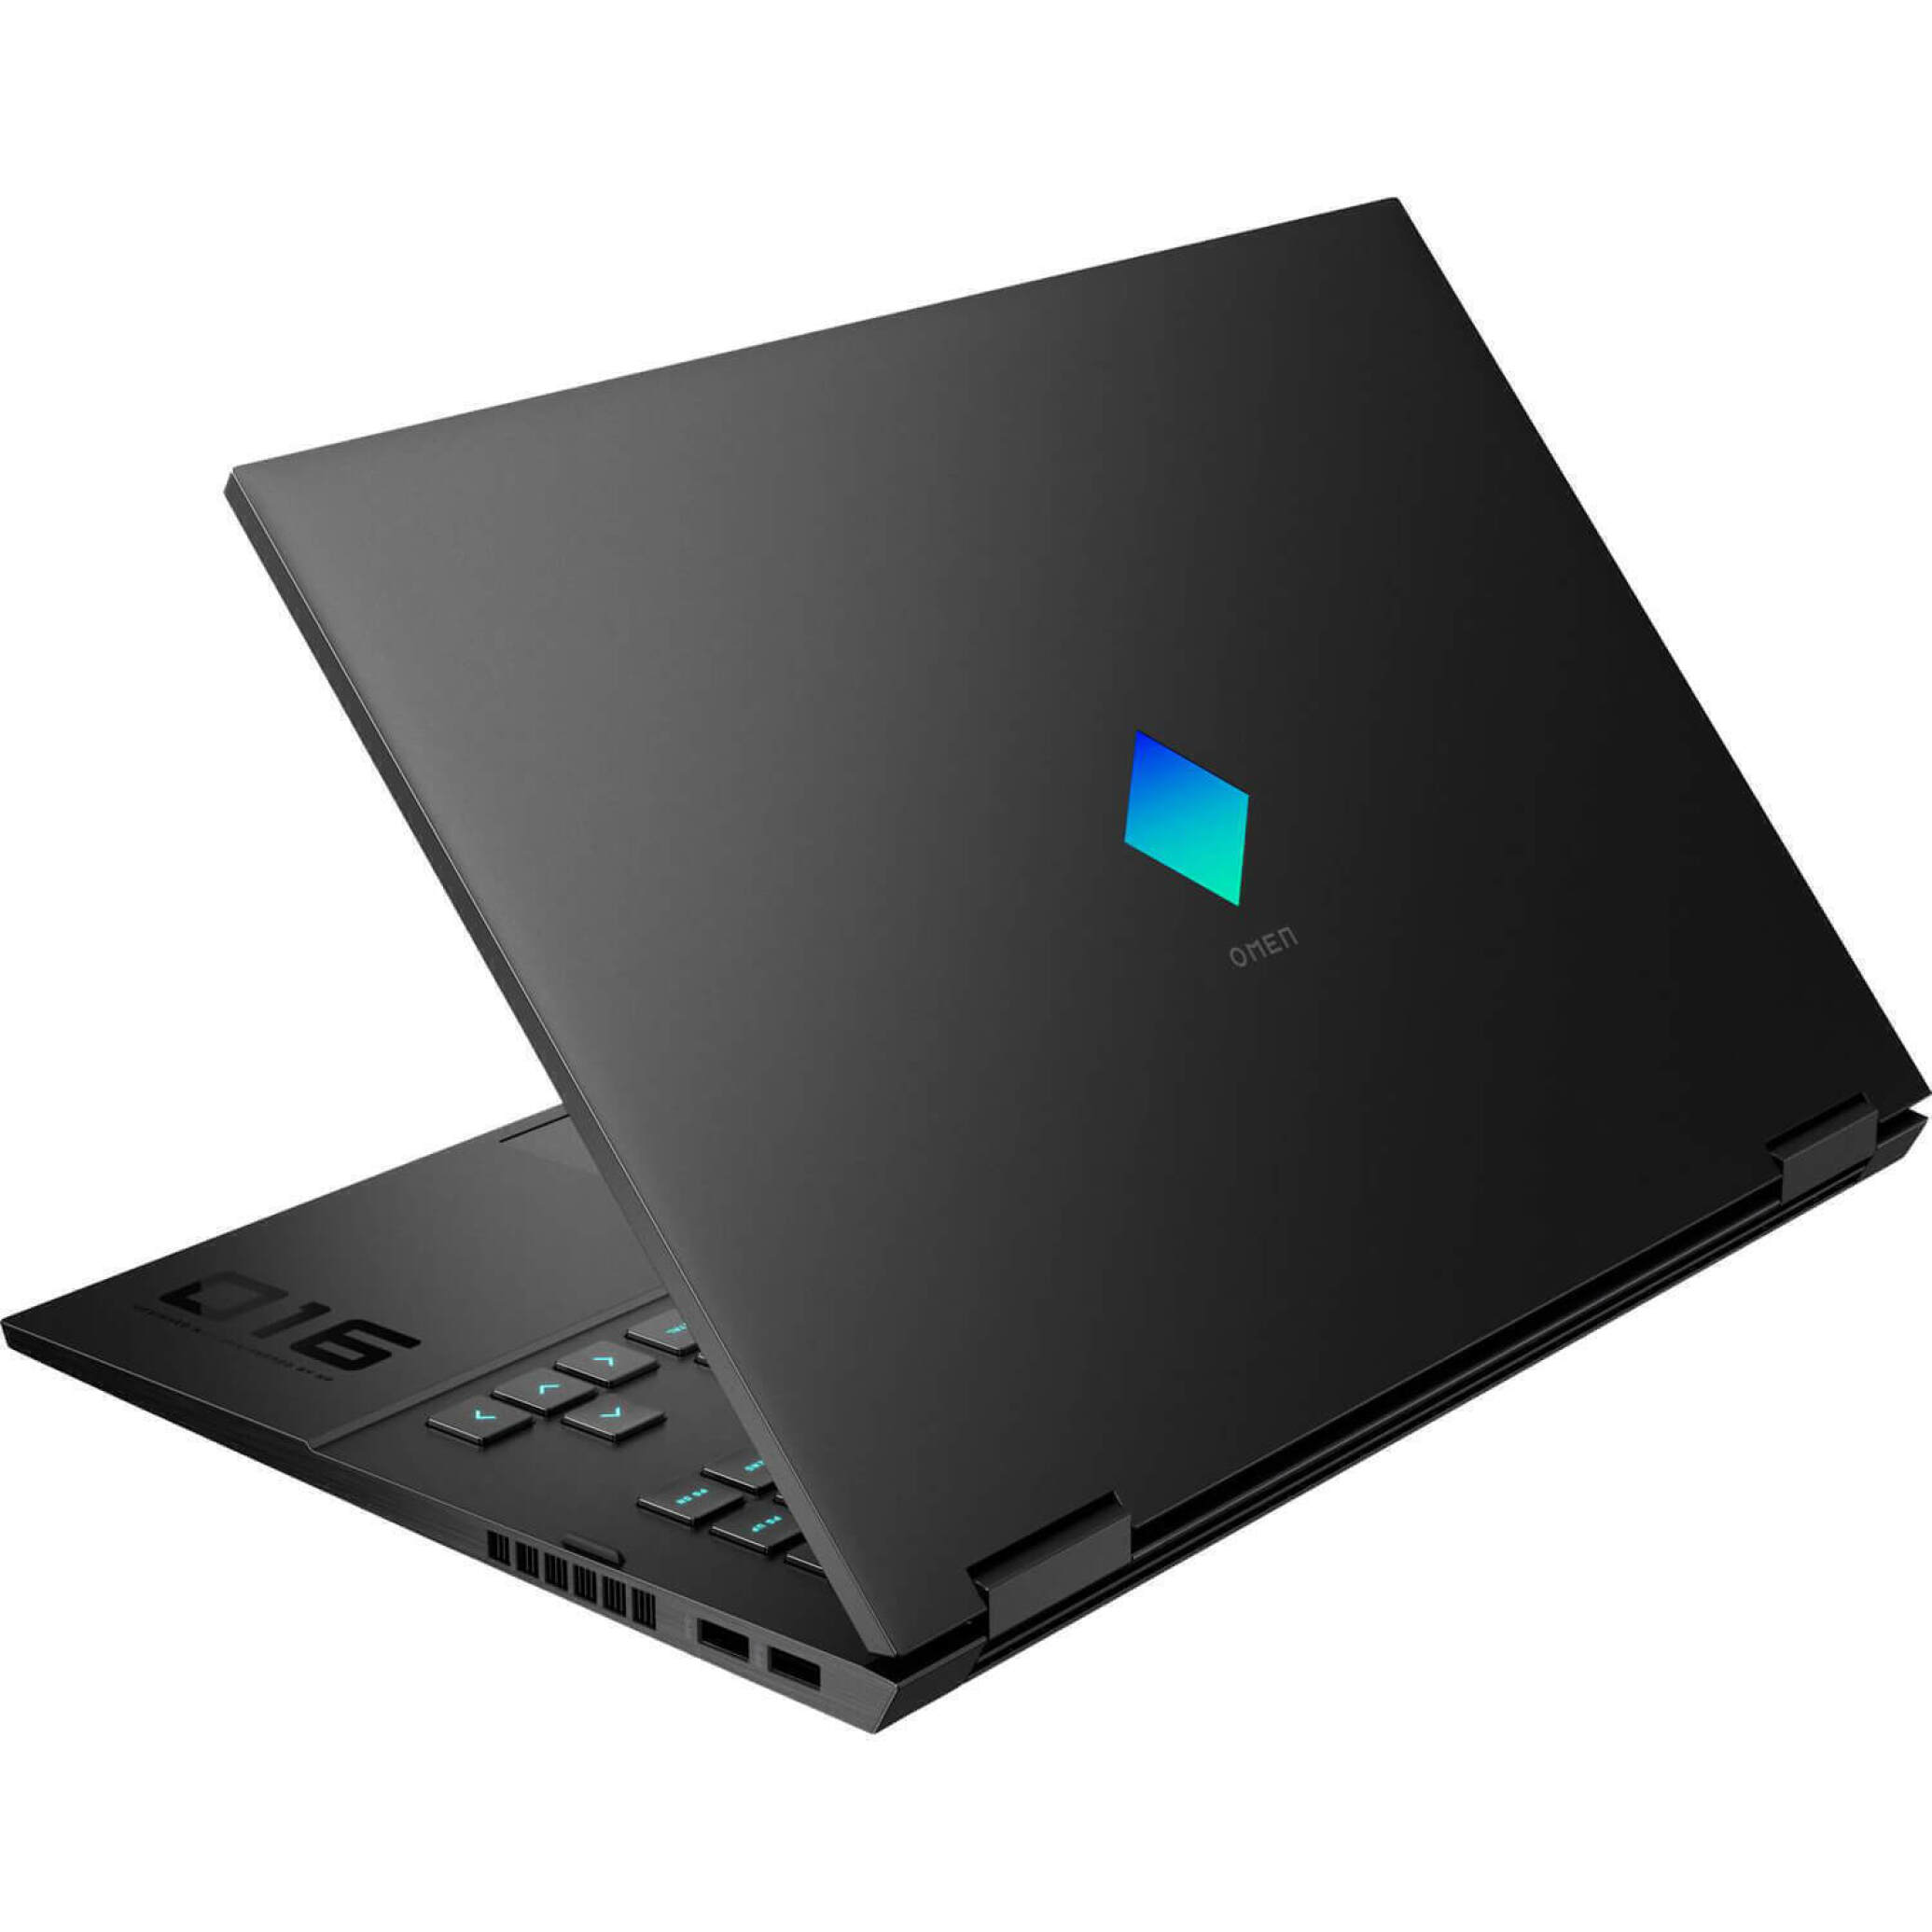  قیمت لپ تاپ HP OMEN 16 C0007ns - 2022 با پردازنده رایزن 9 | لاکچری لپ تاپ 